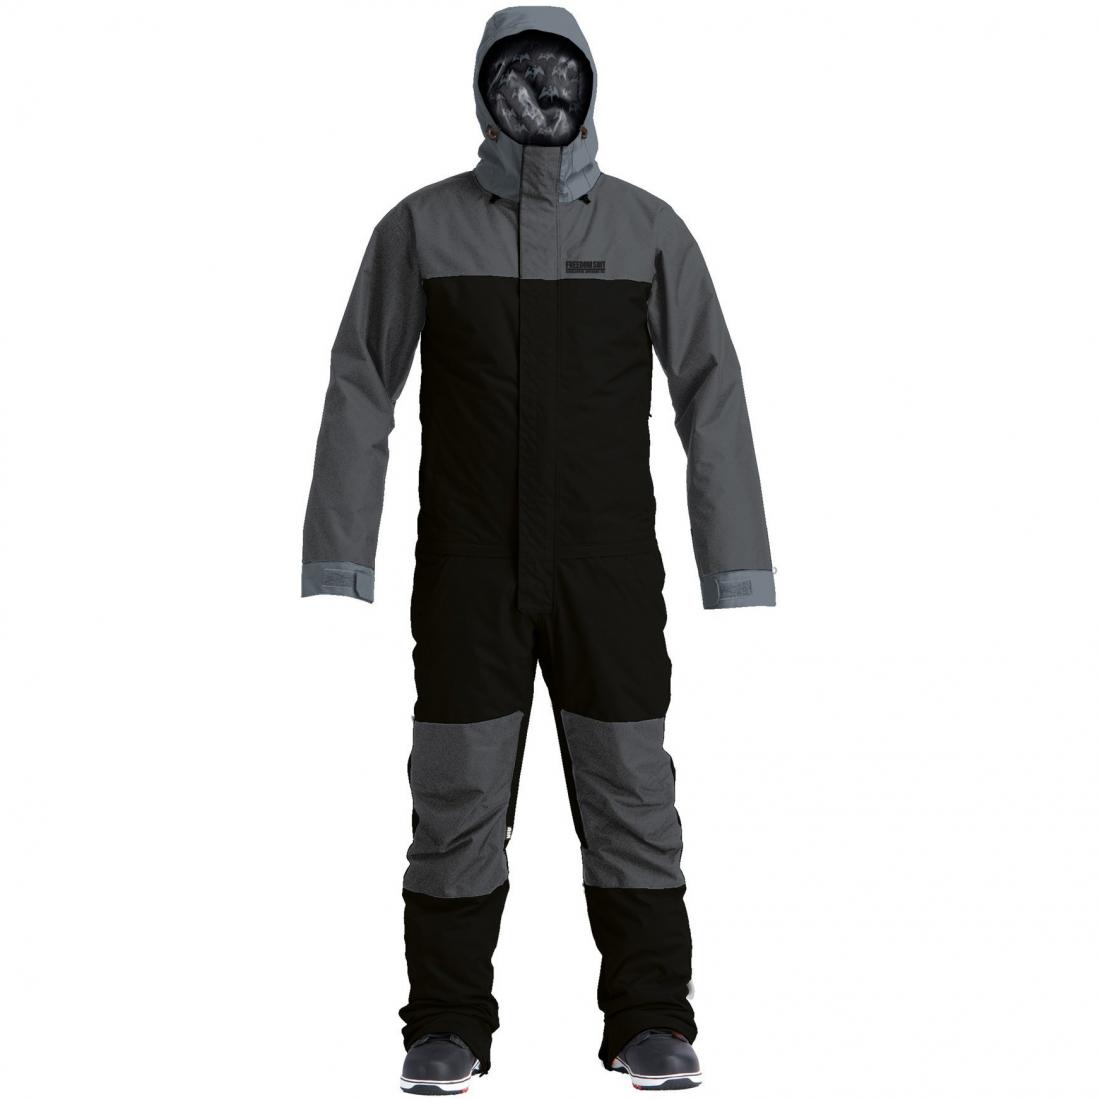 Комбинезон Insulated Freedom Suit Airblaster, цвет черный 1, размер M - фото 1